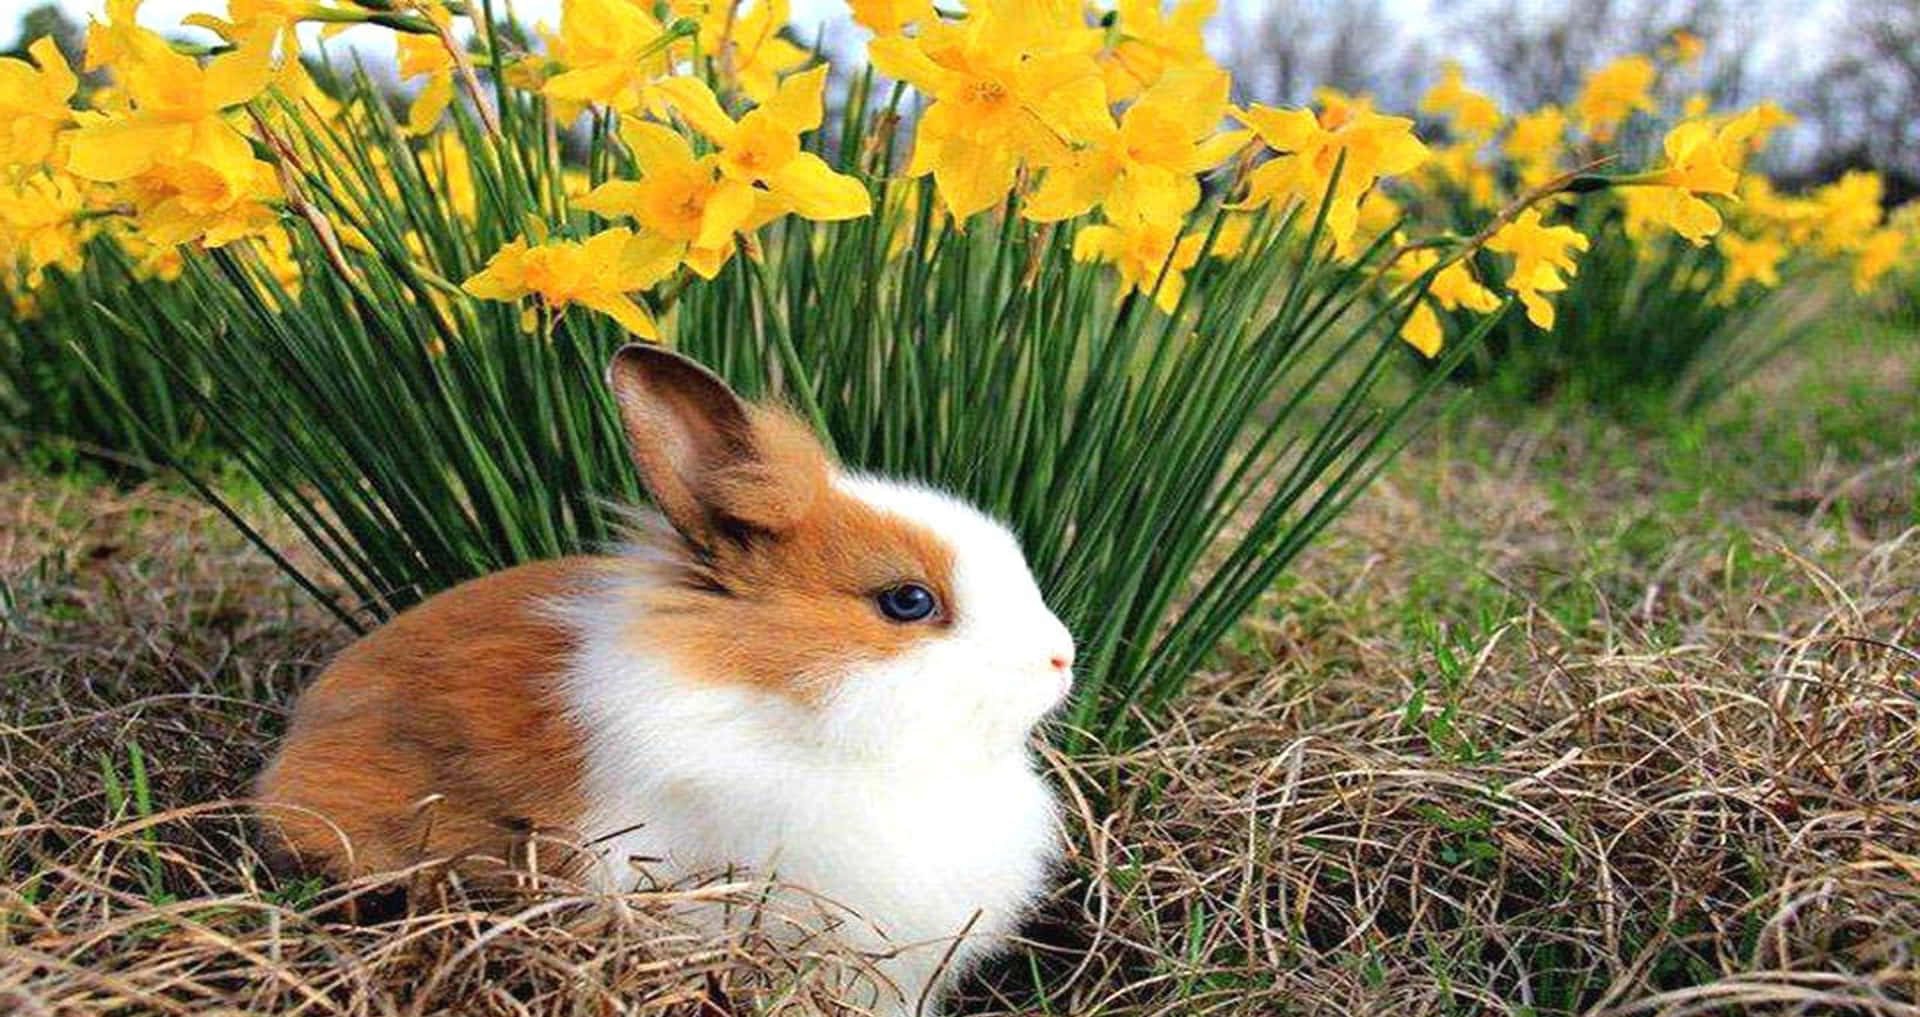 Einflauschiges Kleines Kaninchen Schaut Voller Liebe Und Freude Zum Himmel Hoch.